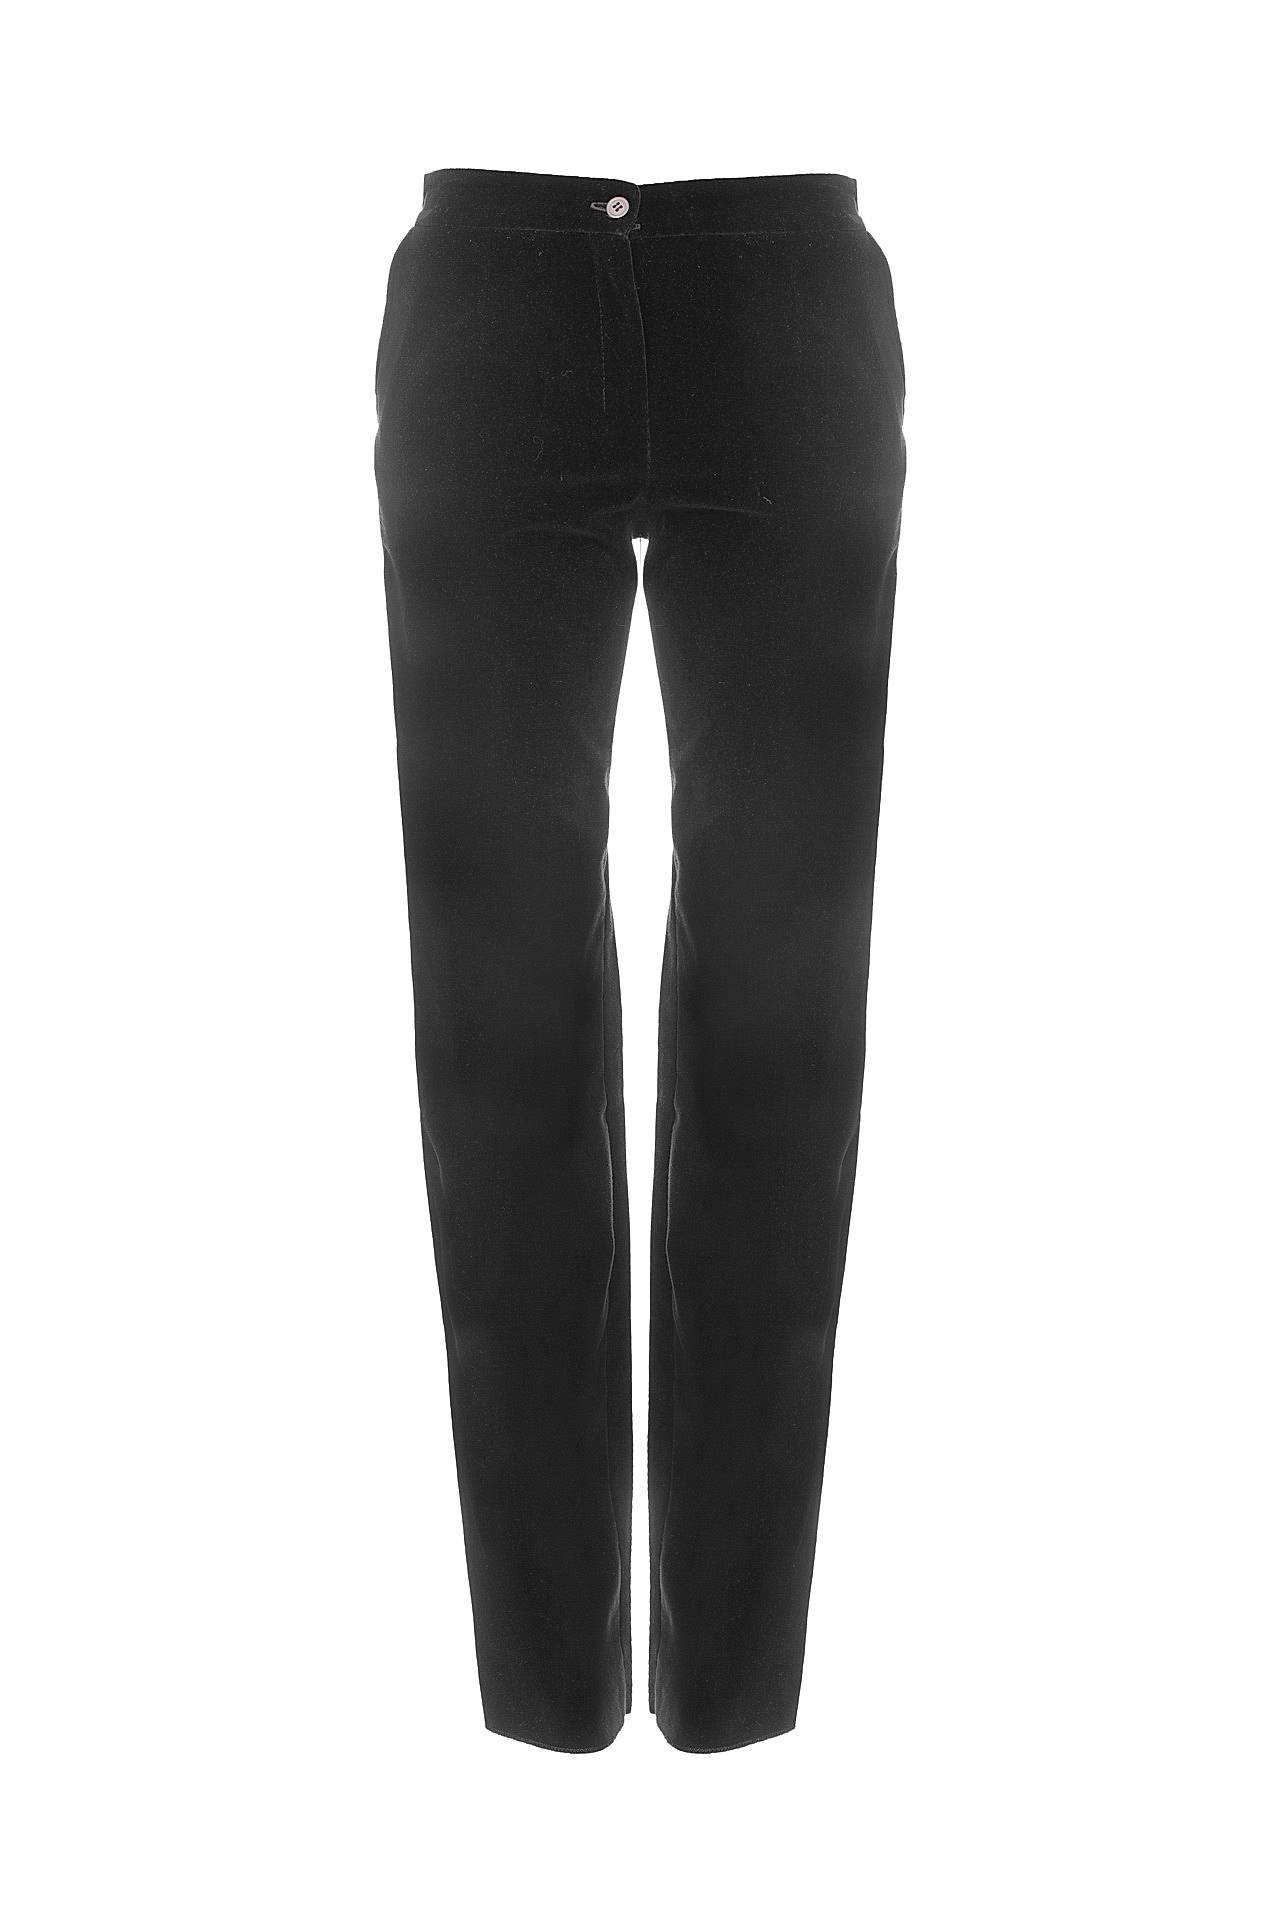 Одежда женская Брюки Yves Saint Laurent Vintage (RGC01P1001710/00). Купить за 18250 руб.